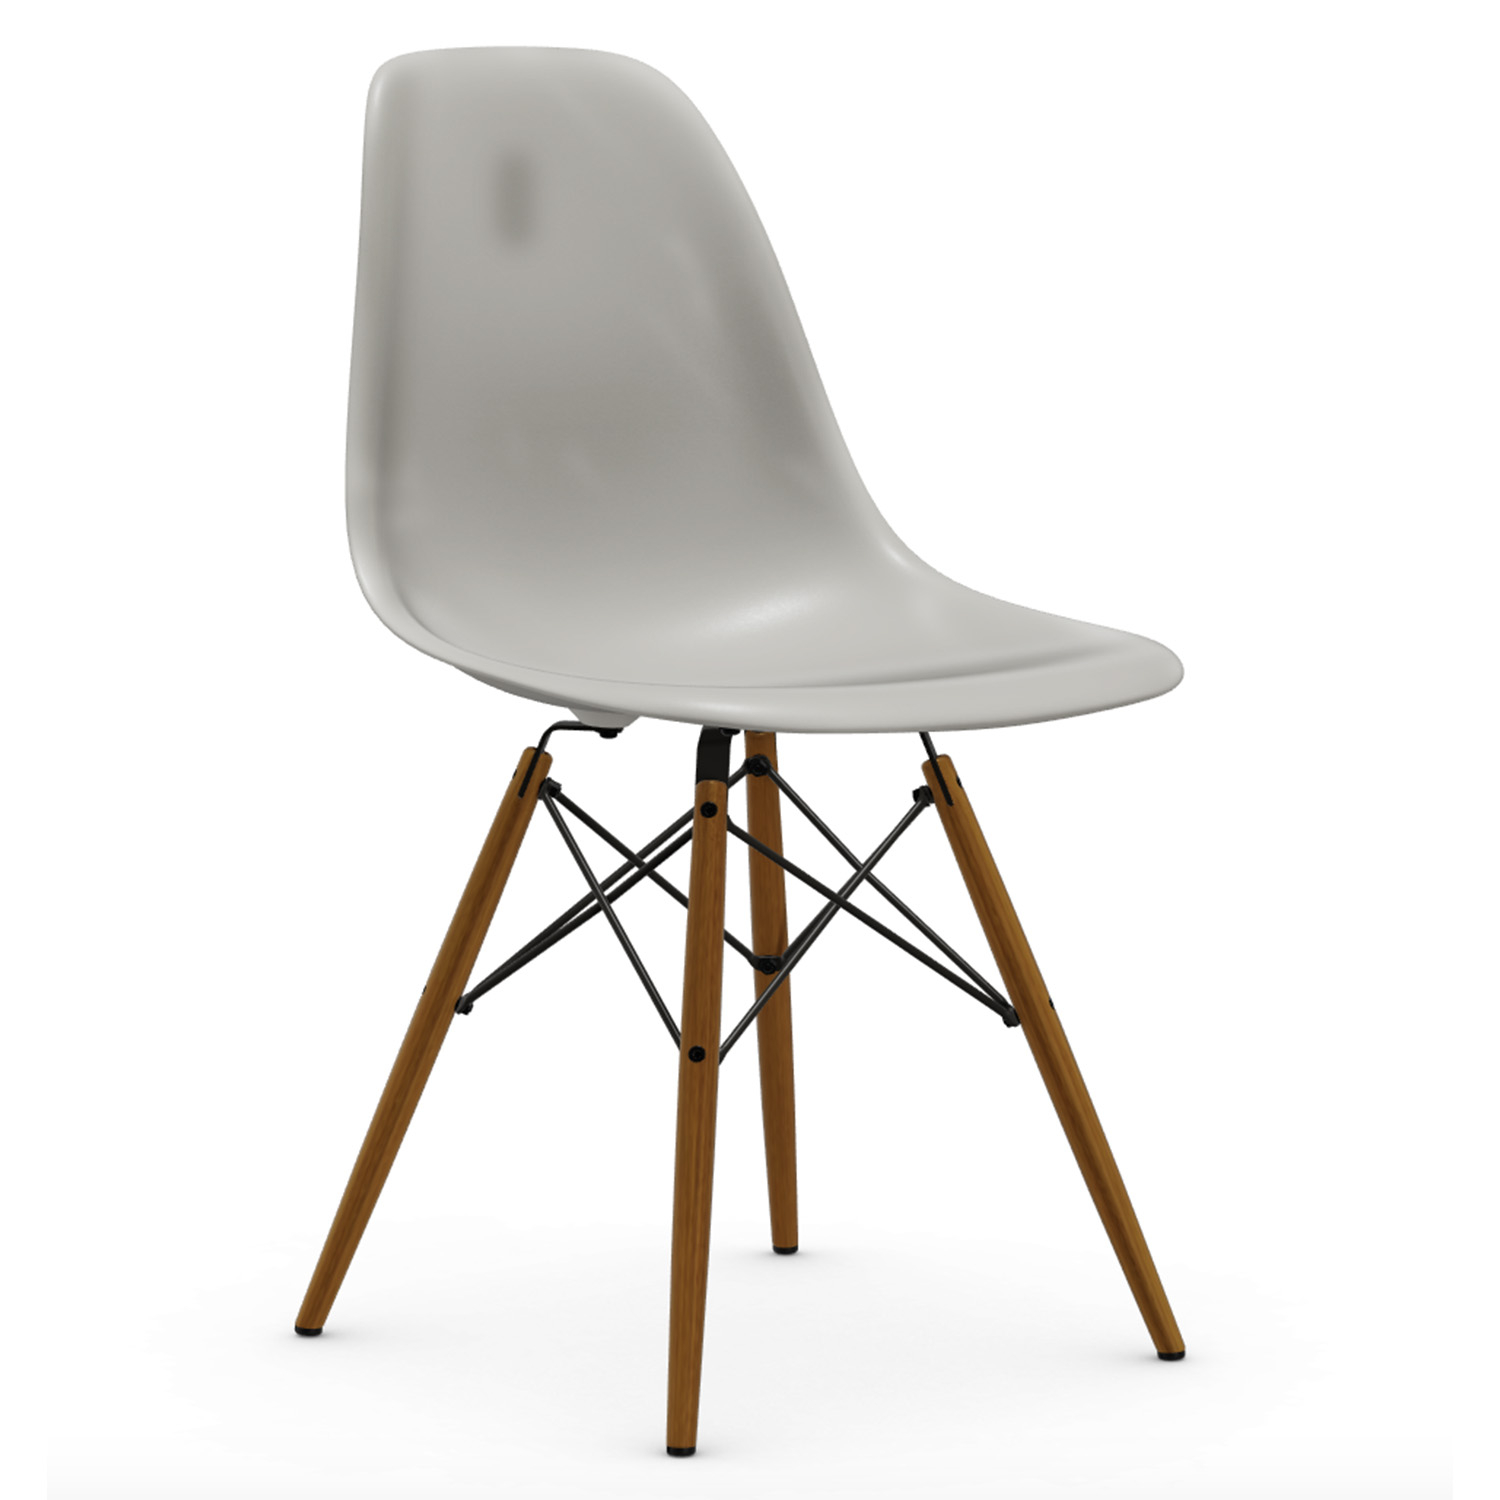 Výprodej Vitra designové židle DSW-skořepina krémová, podnož jasan přírodní